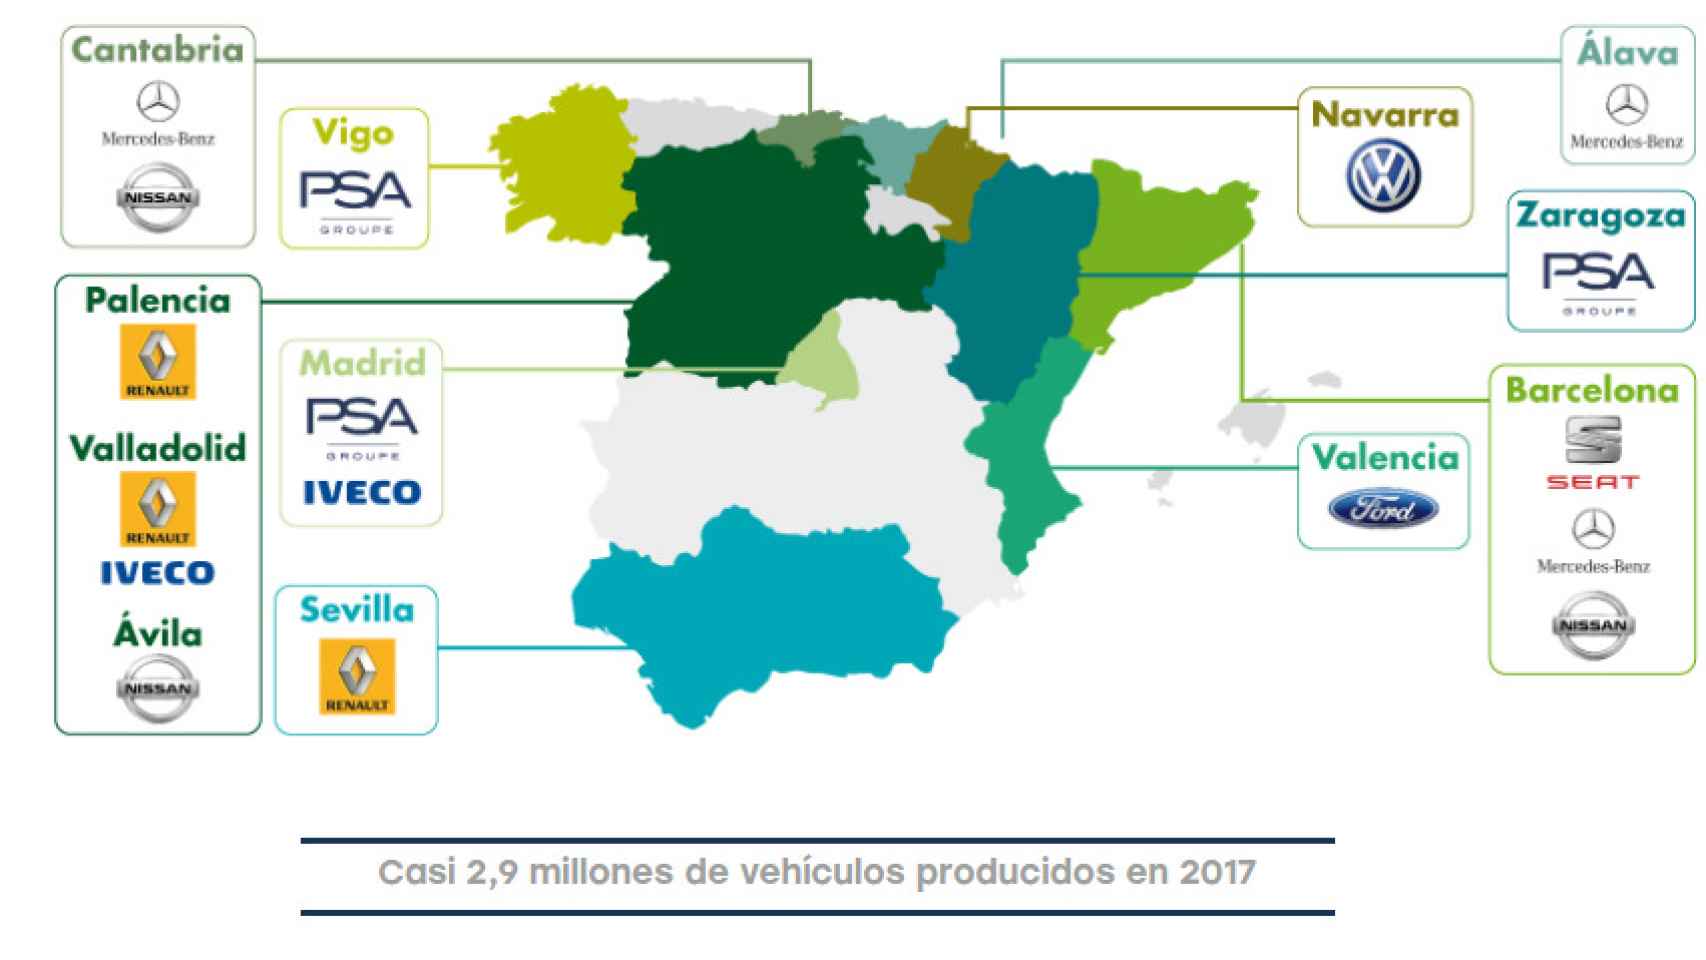 Mapa con las fábricas de coches que hay en España, datos de ANFAC.